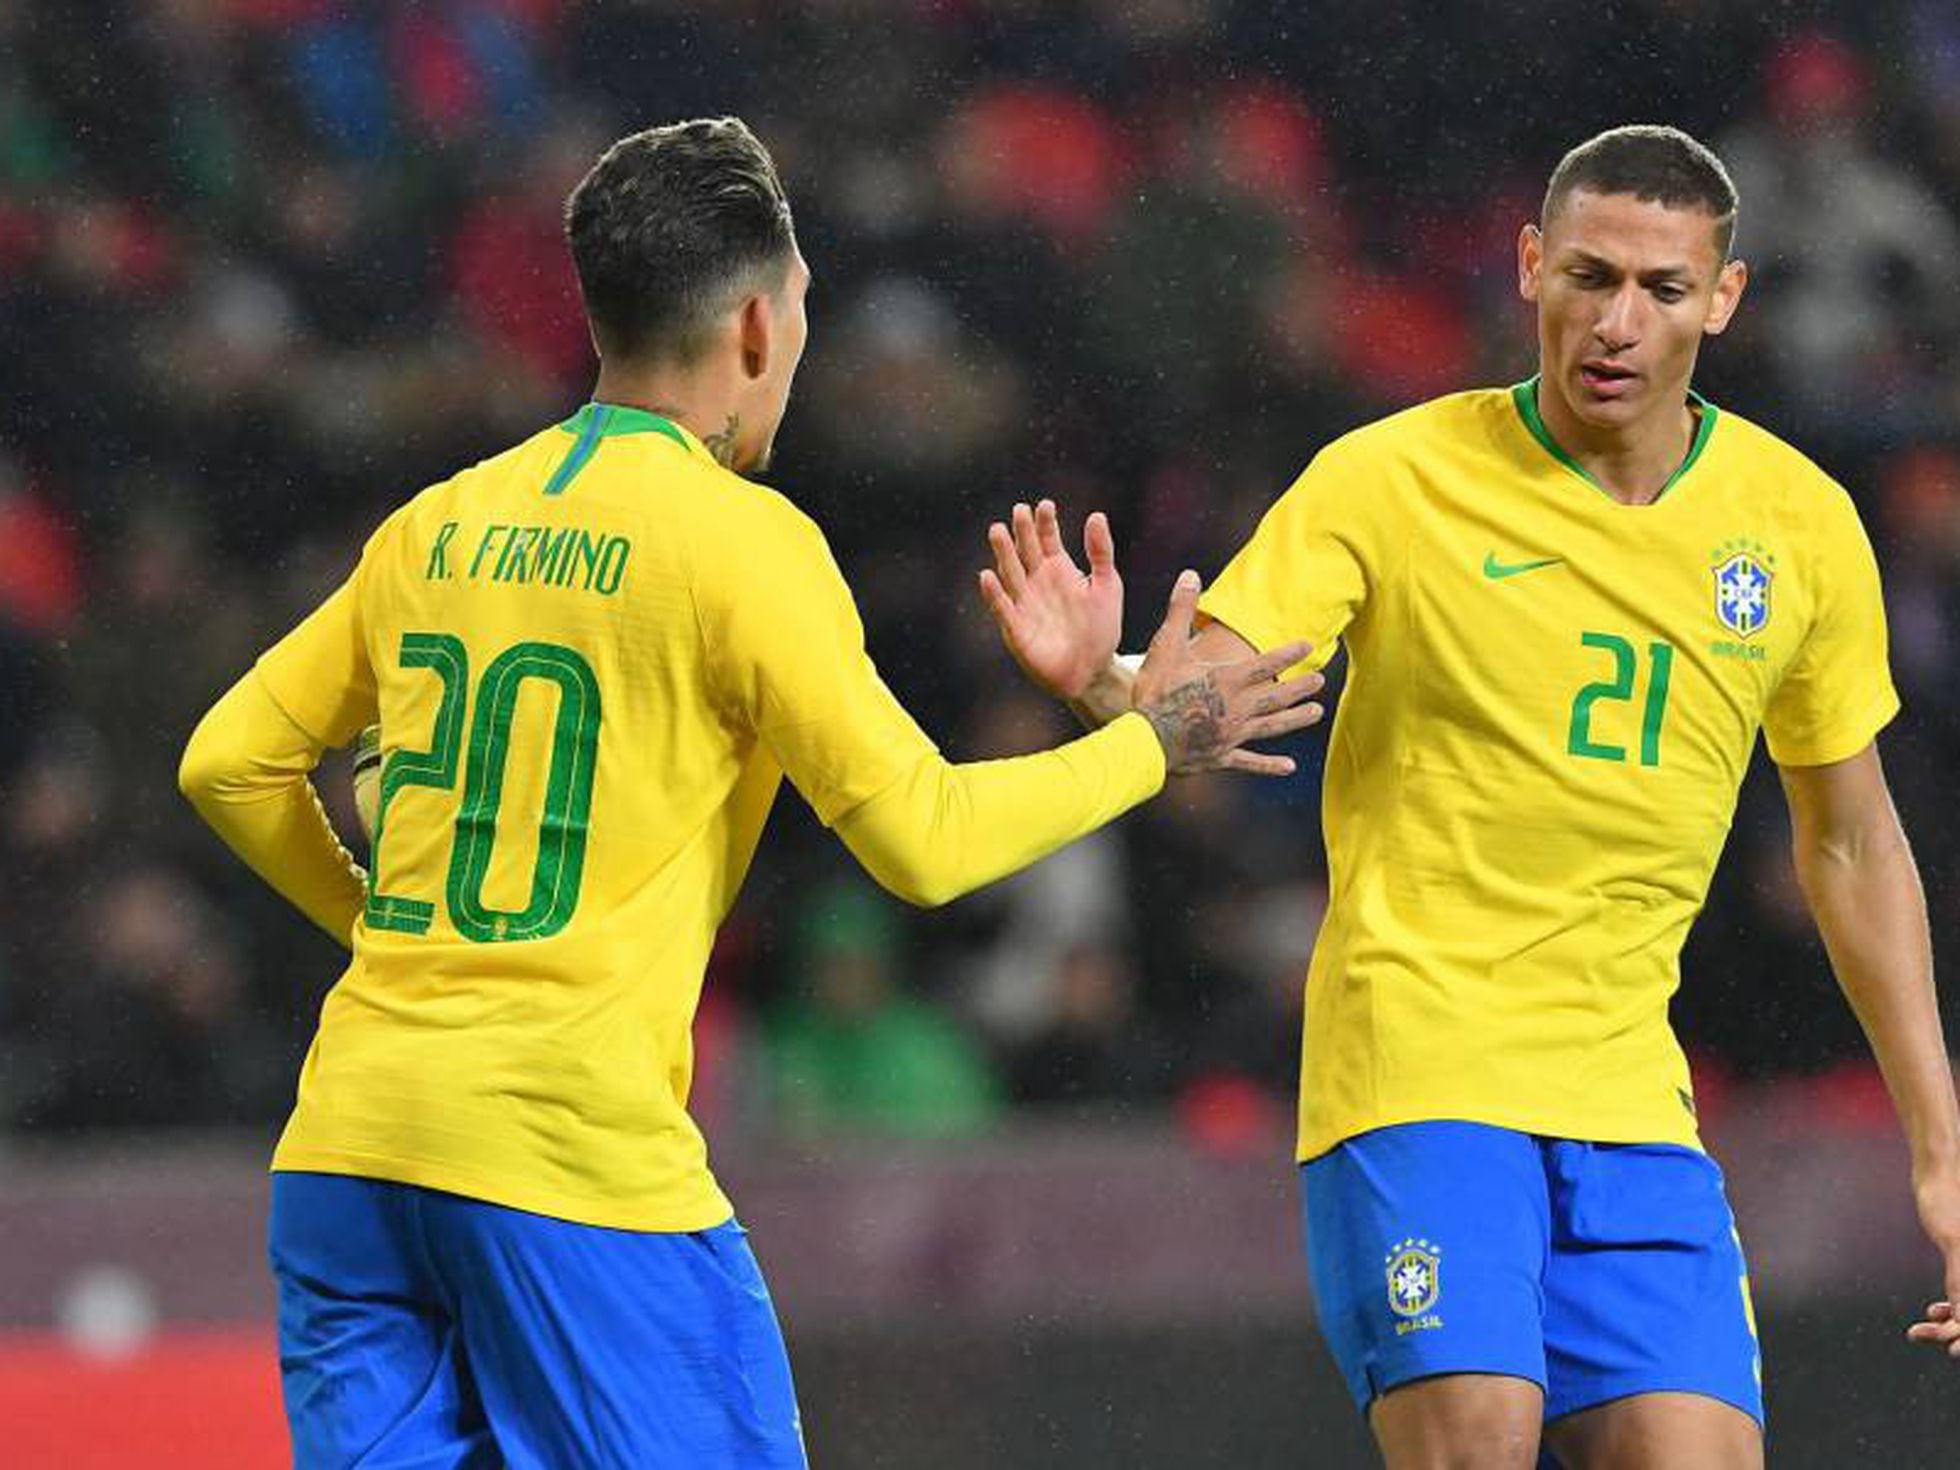 Brasil salva match-point e derrota Tchéquia no Pré-Olímpico de